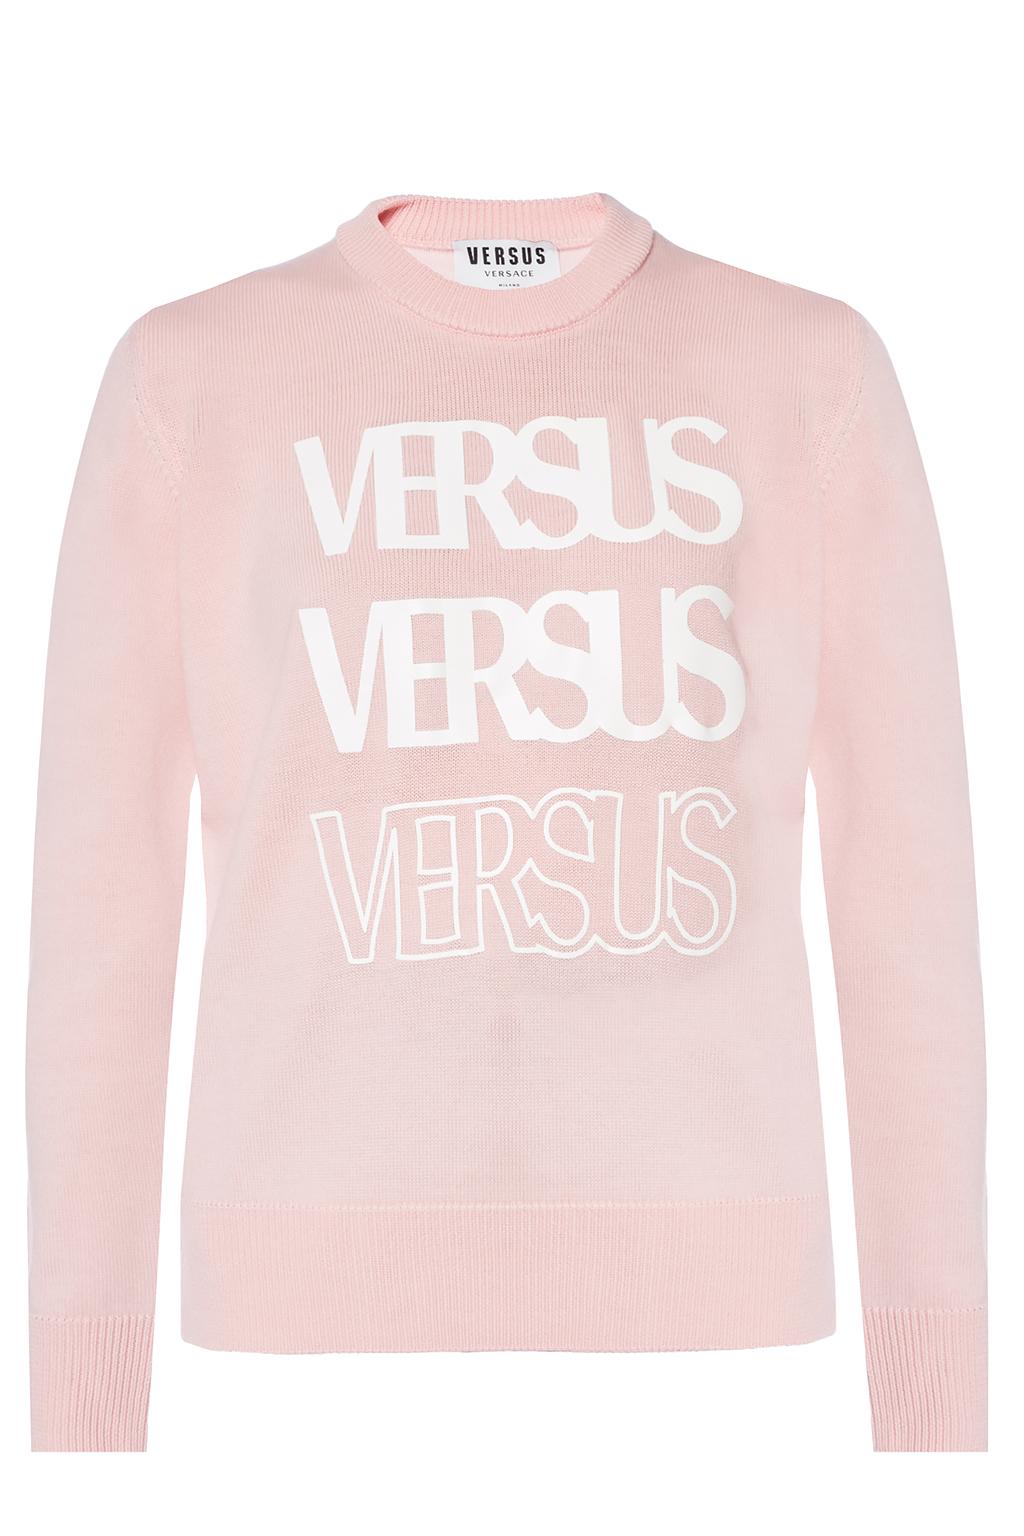 versace versus sweater